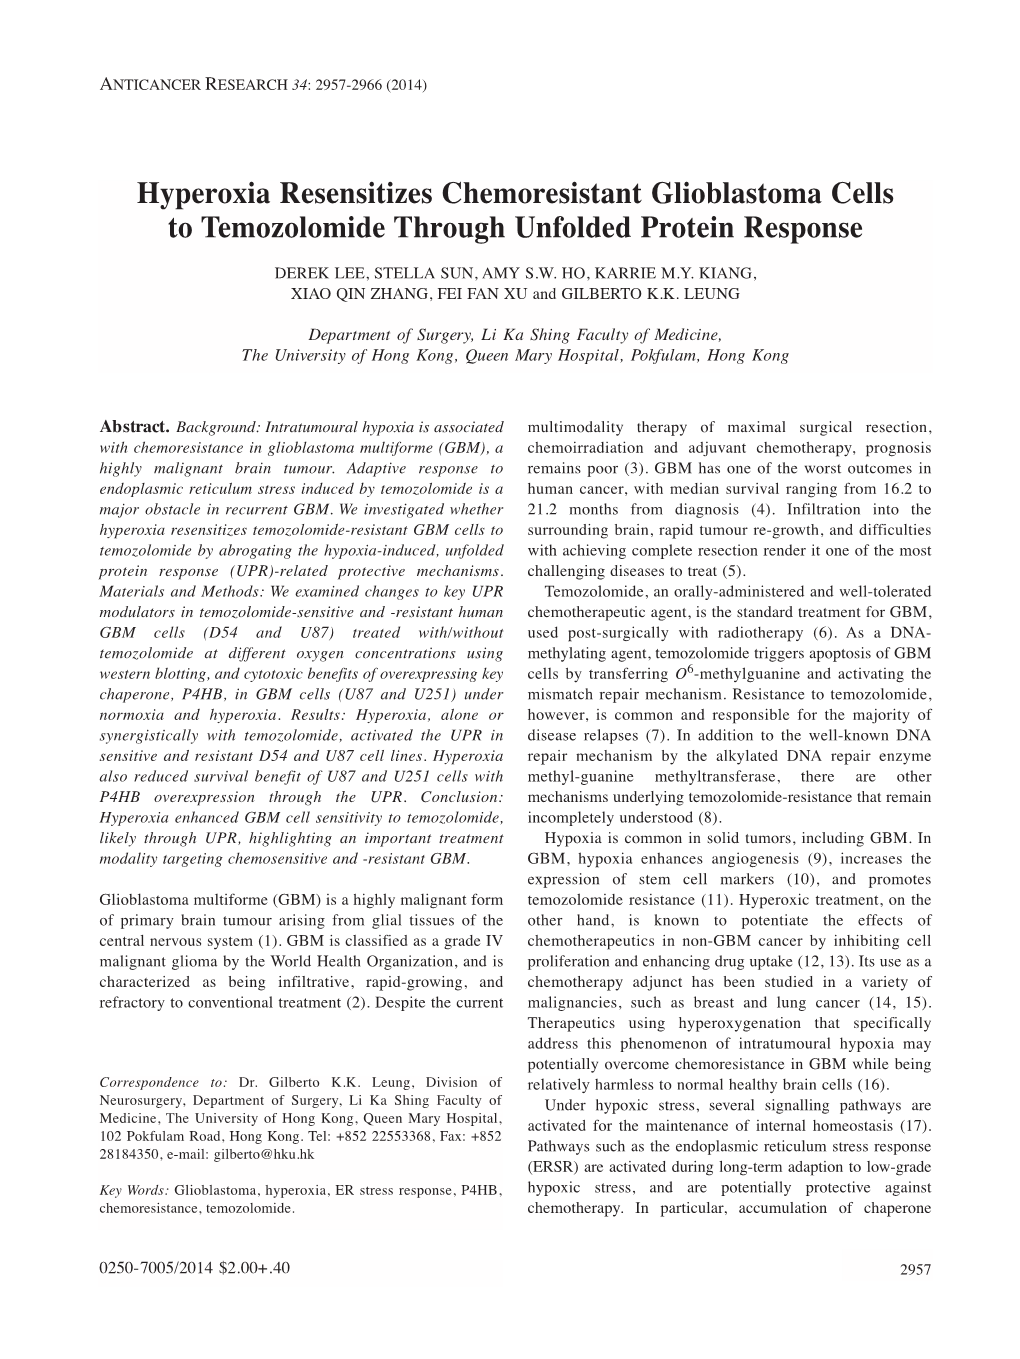 Hyperoxia Resensitizes Chemoresistant Glioblastoma Cells to Temozolomide Through Unfolded Protein Response